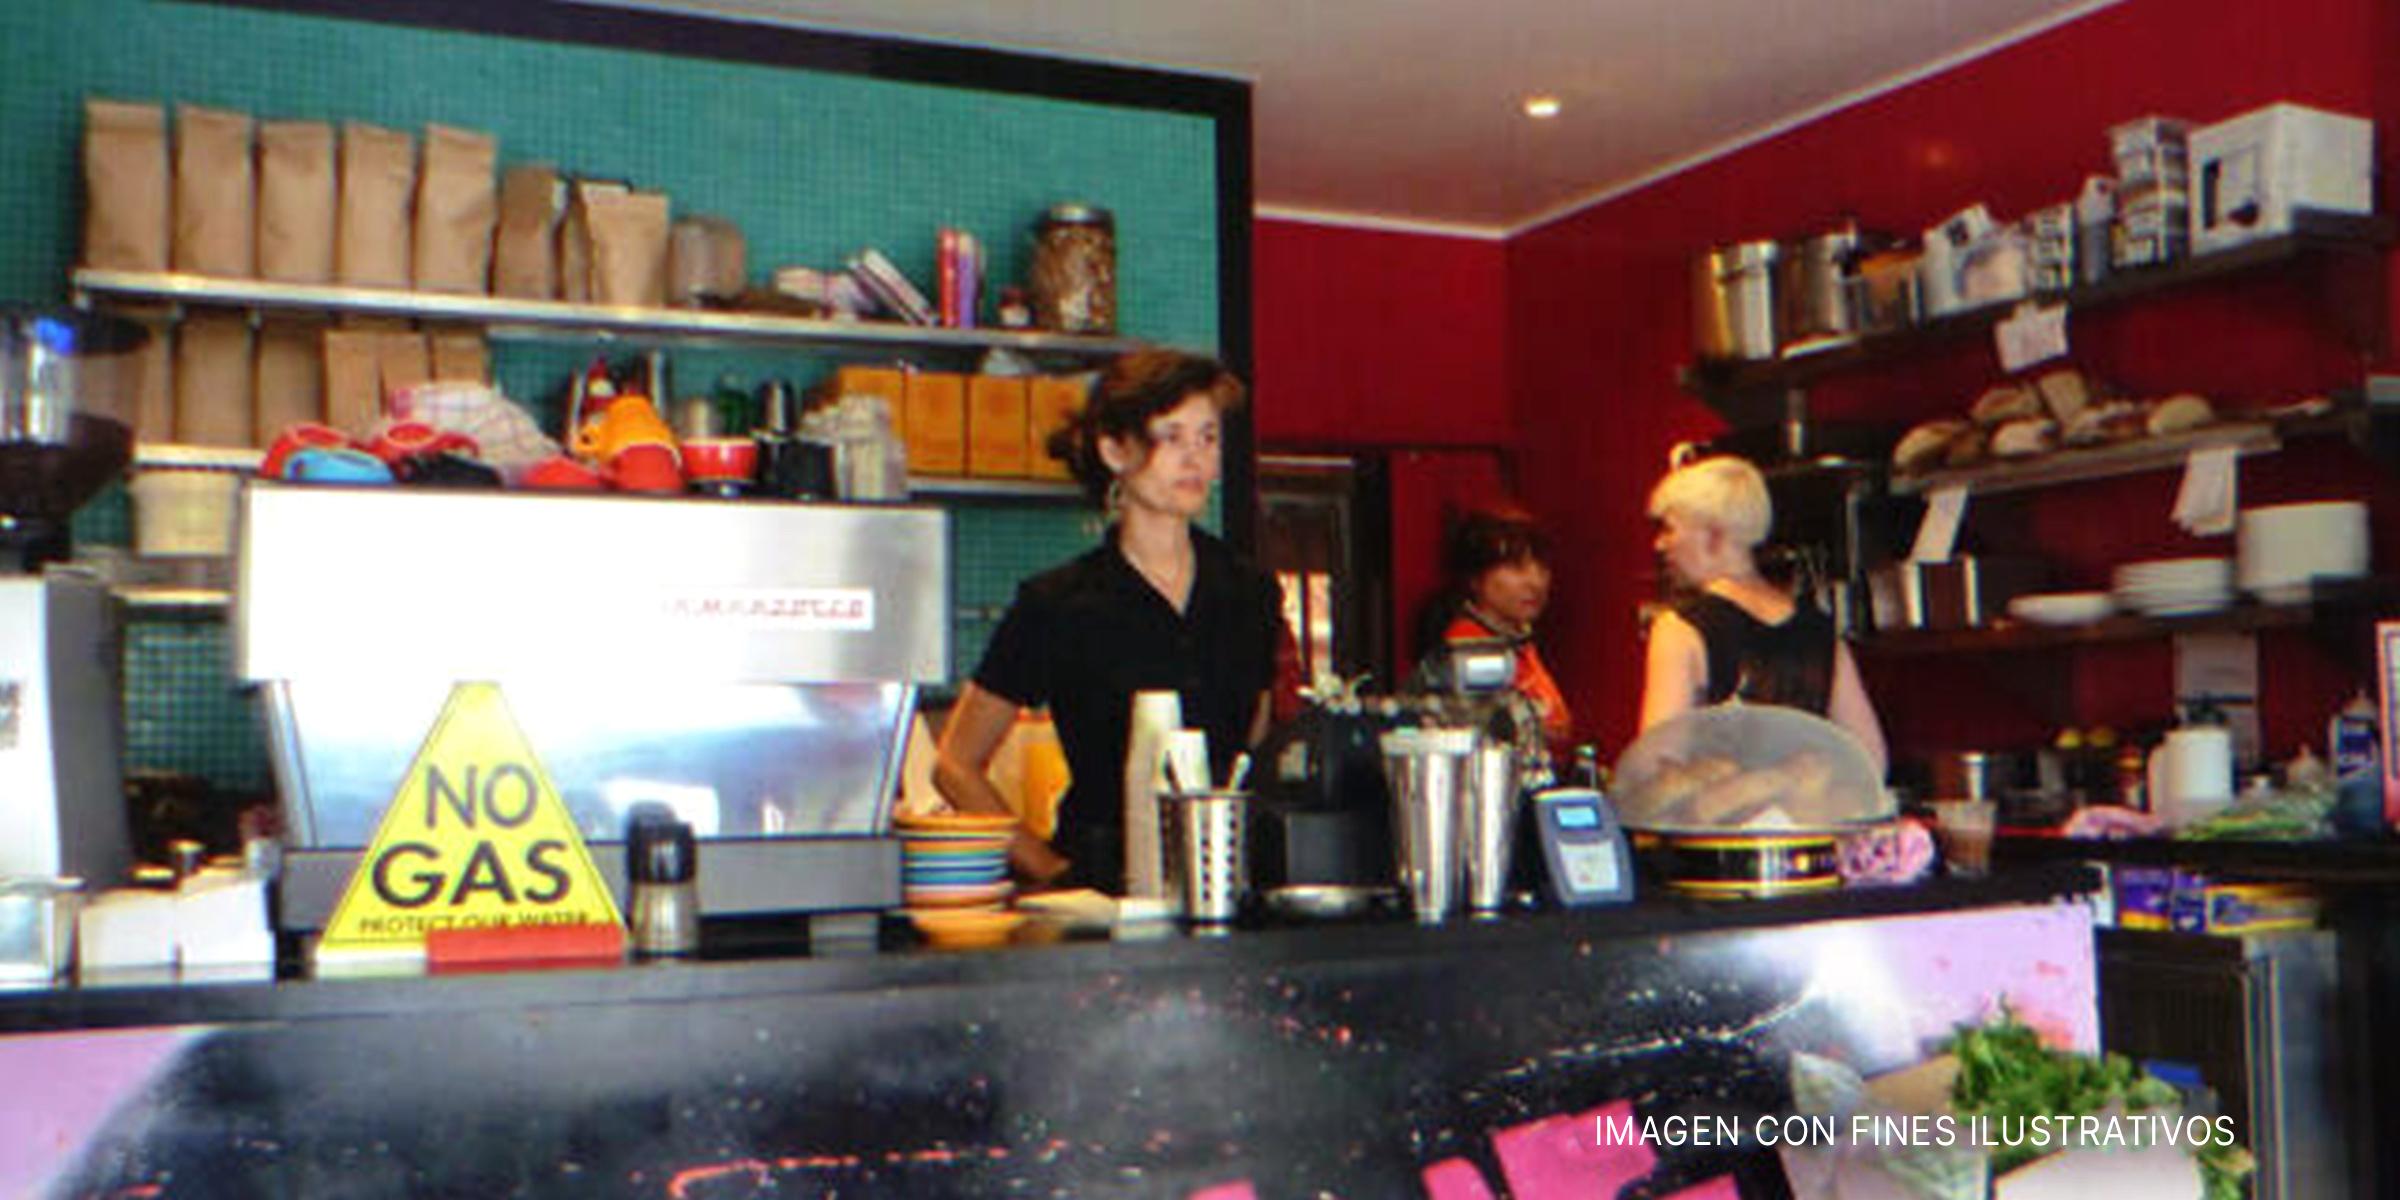 Camarera en una cafetería | Foto: Flickr.com/HerryLawford (CC BY 2.0)